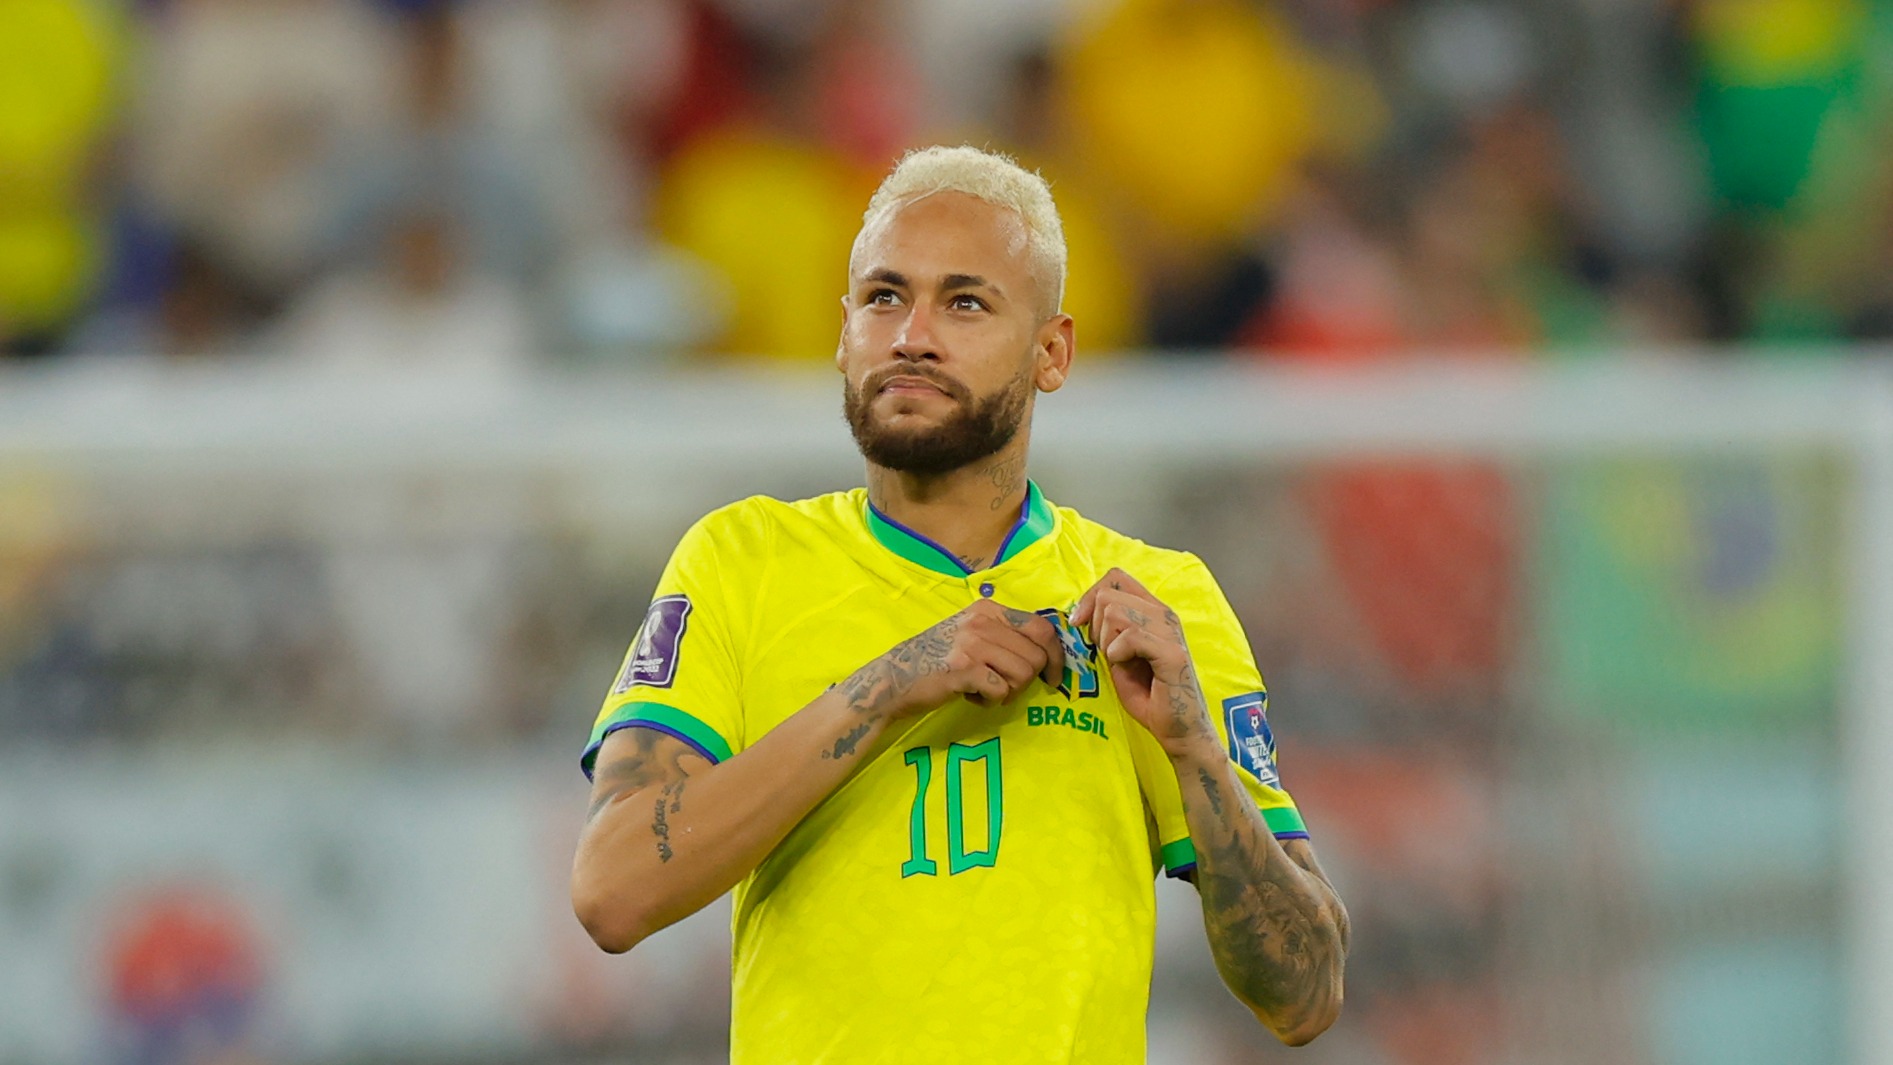 Neymar tras de Brasil: "Estamos enfocados en el título" Deportes